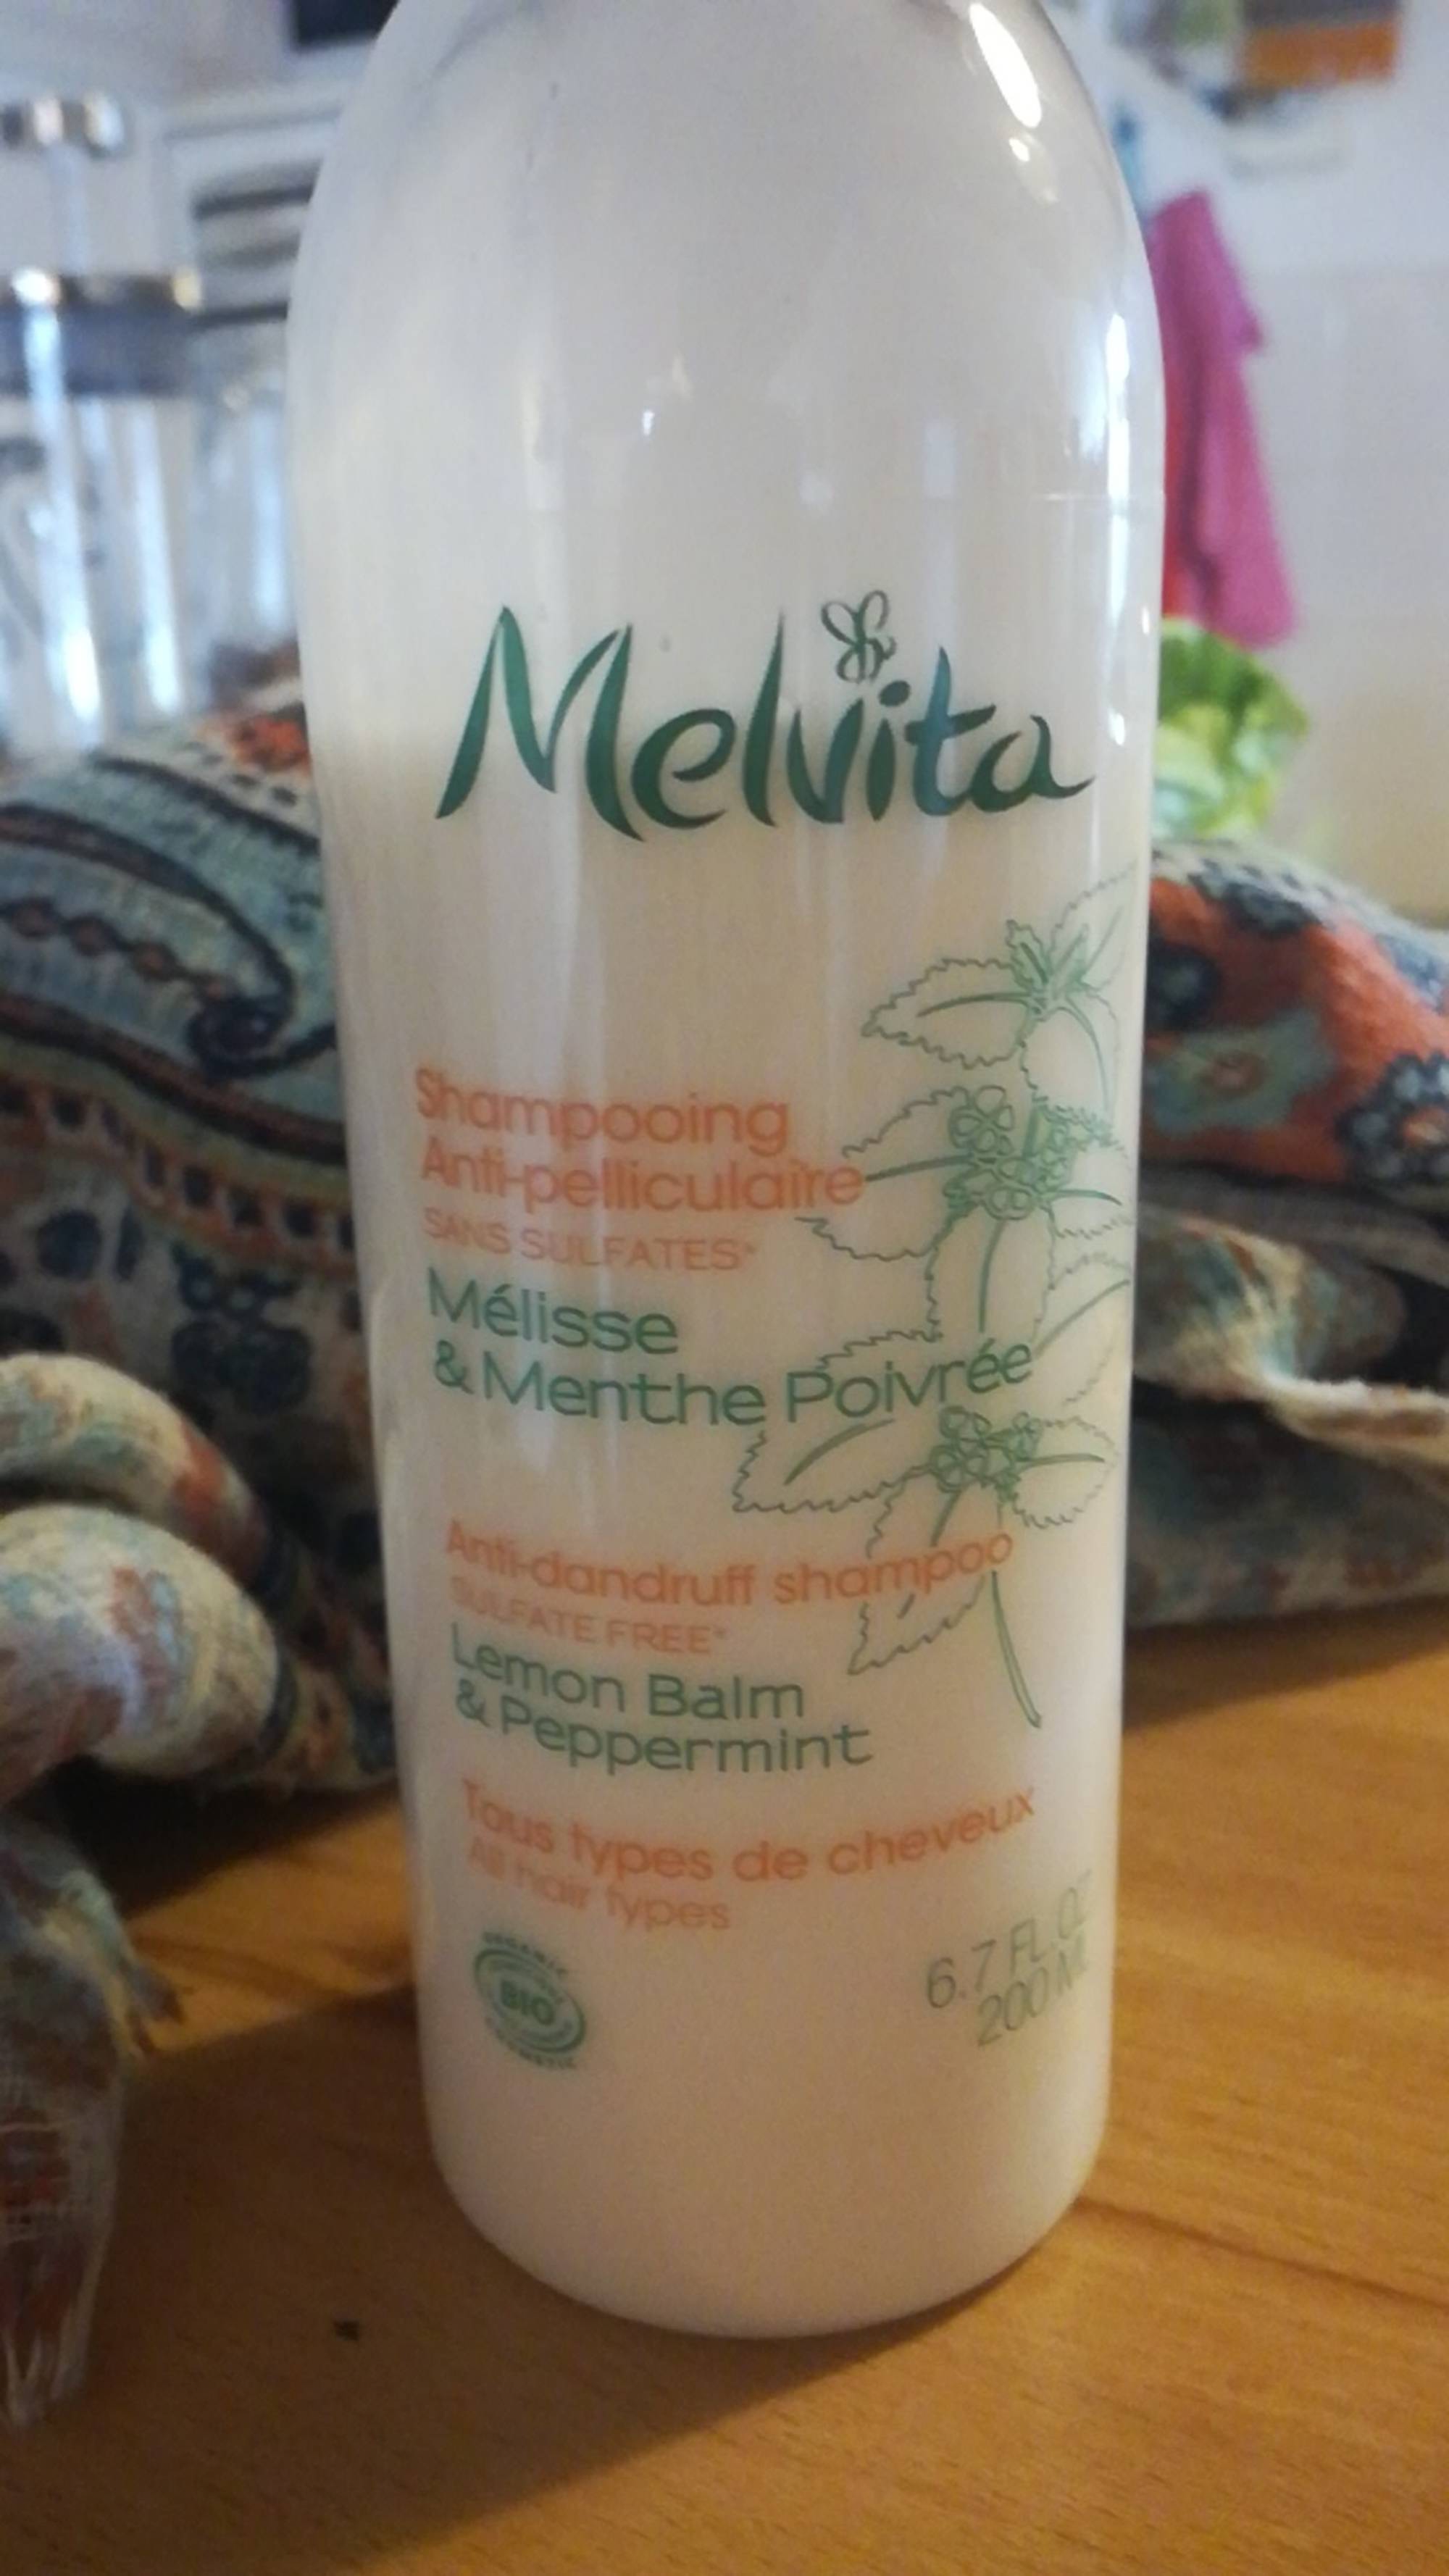 MELVITA -  Mélisse & menthe poivrée - Shampooing anti-pelliculaire 